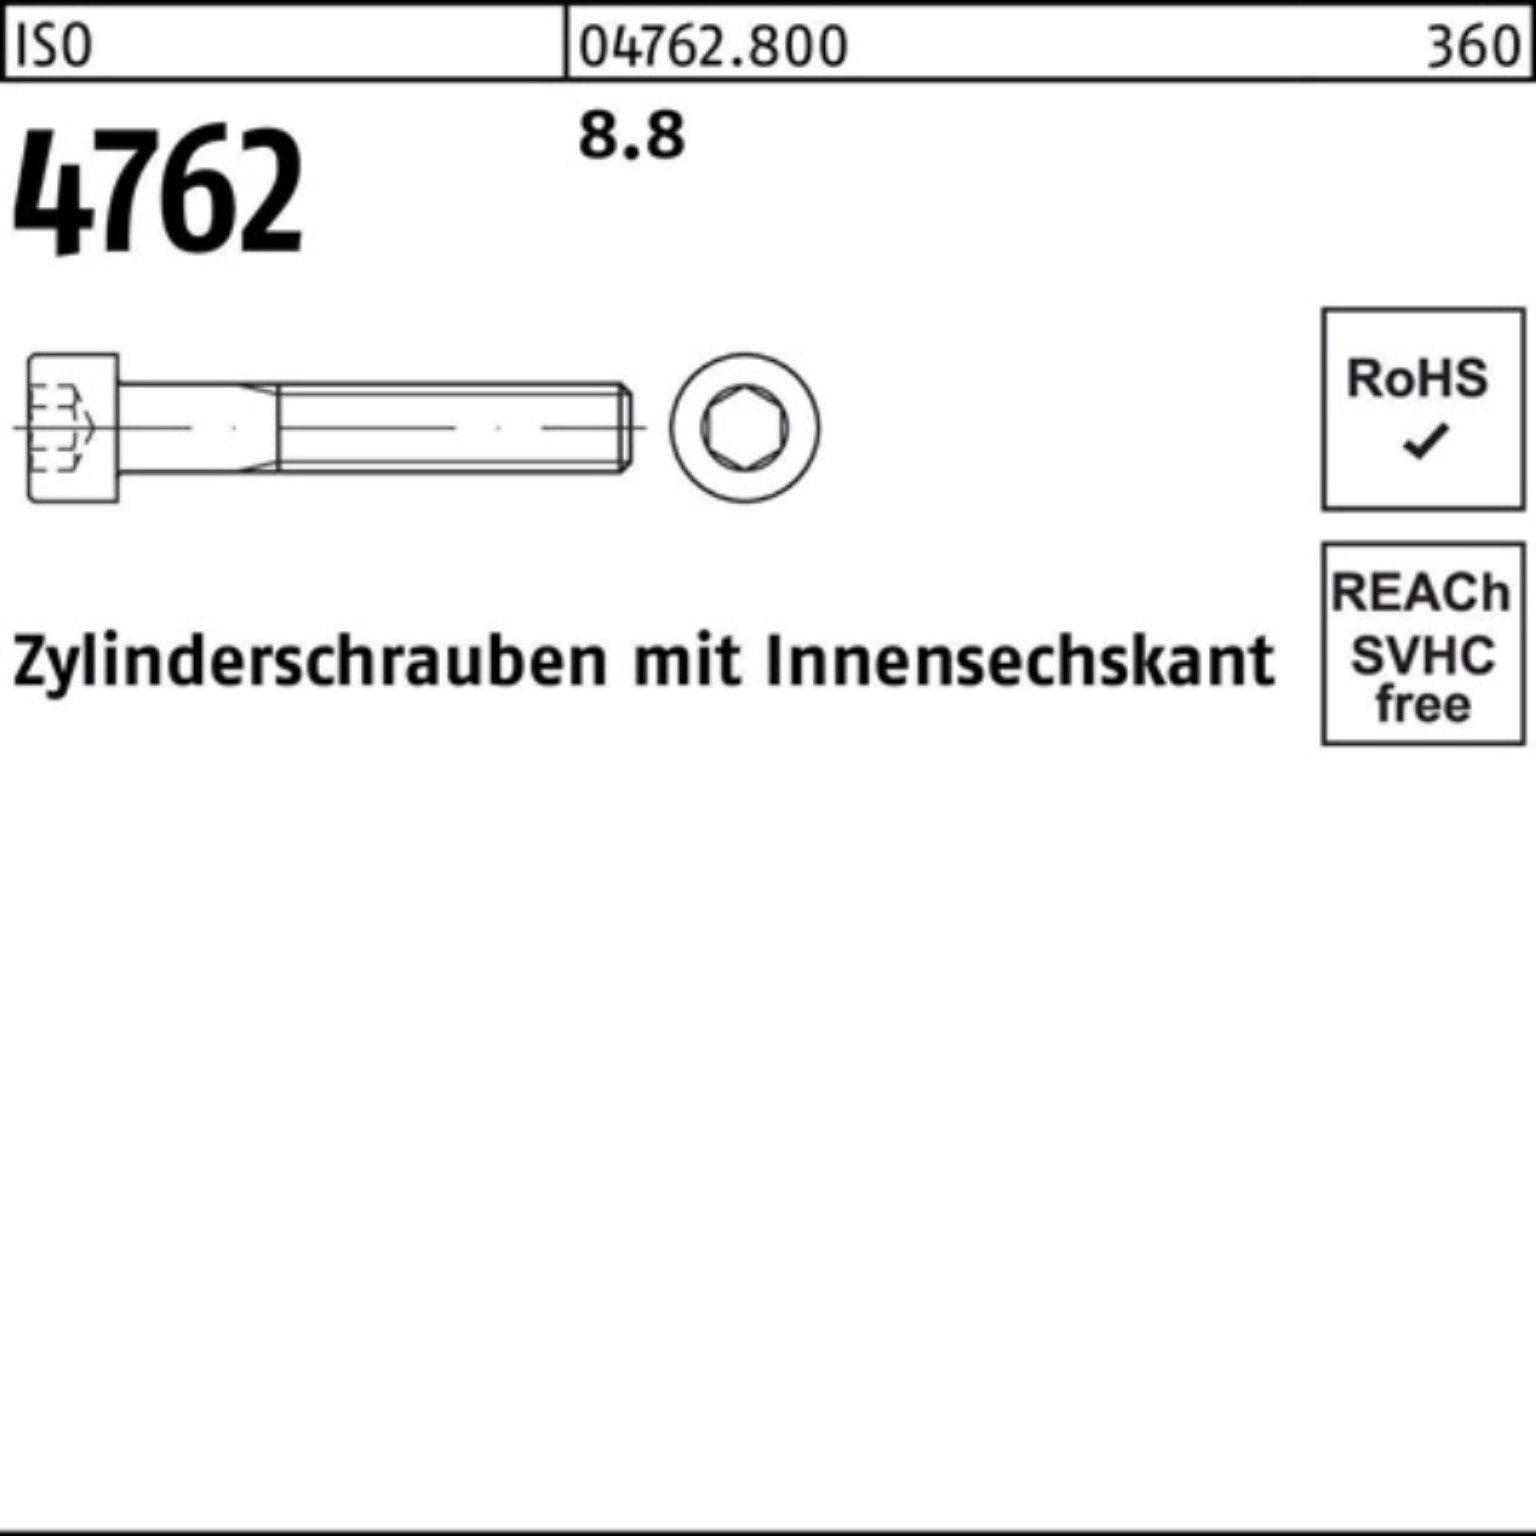 Pack Zylinderschraube 12 4762 Stück 8.8 200er 200 M10x Reyher ISO Innen-6kt Zylinderschraube